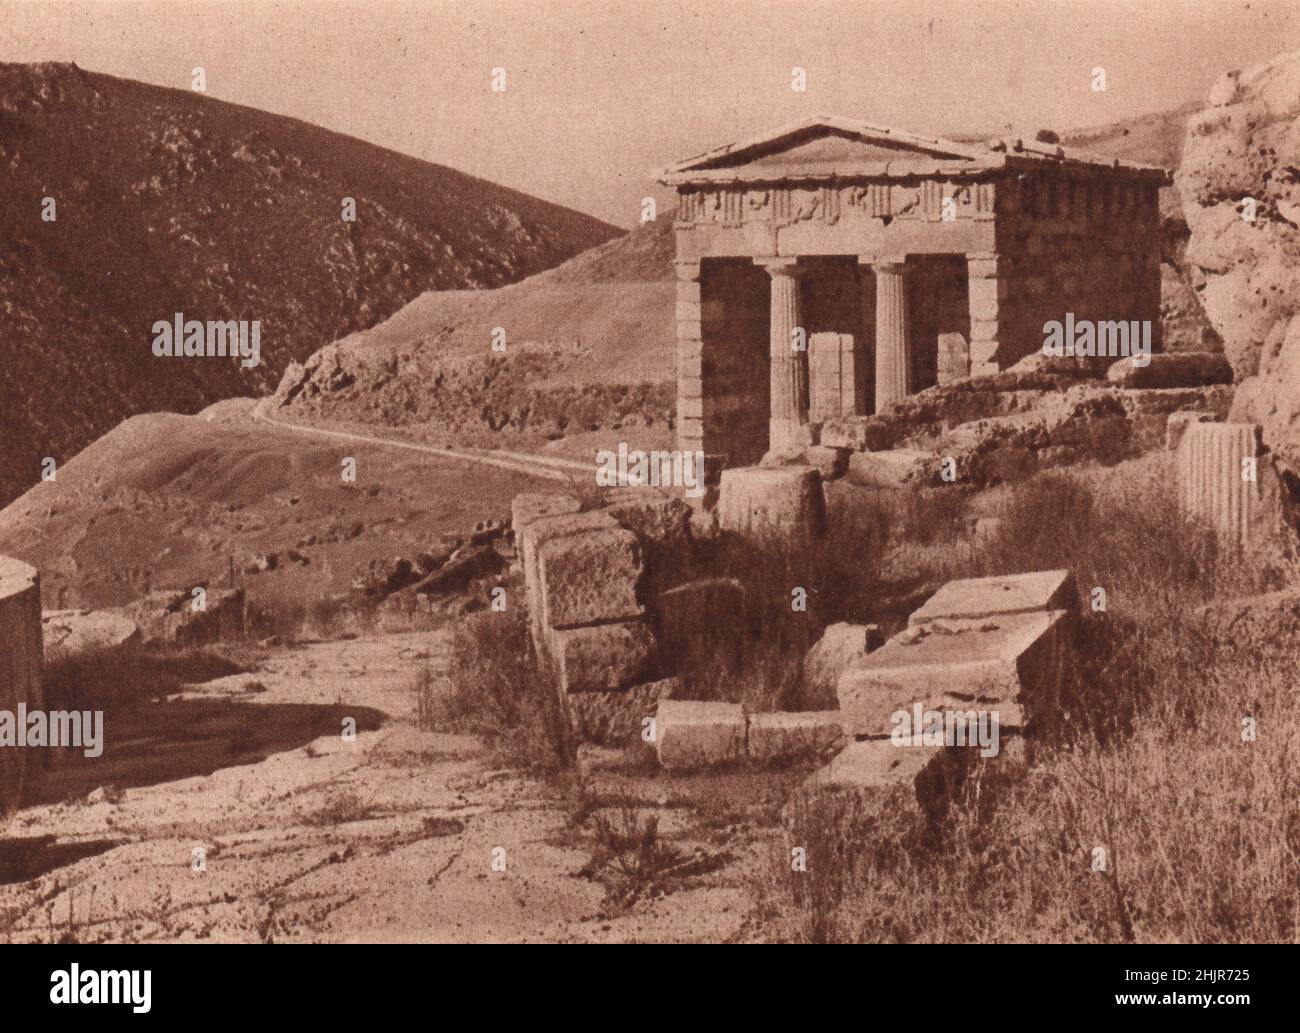 Tra le meravigliose rovine di Delfi si trova l'edificio dorico conosciuto come il Tesoro degli Altheni, con le sue metope scolpite. Grecia (1923) Foto Stock